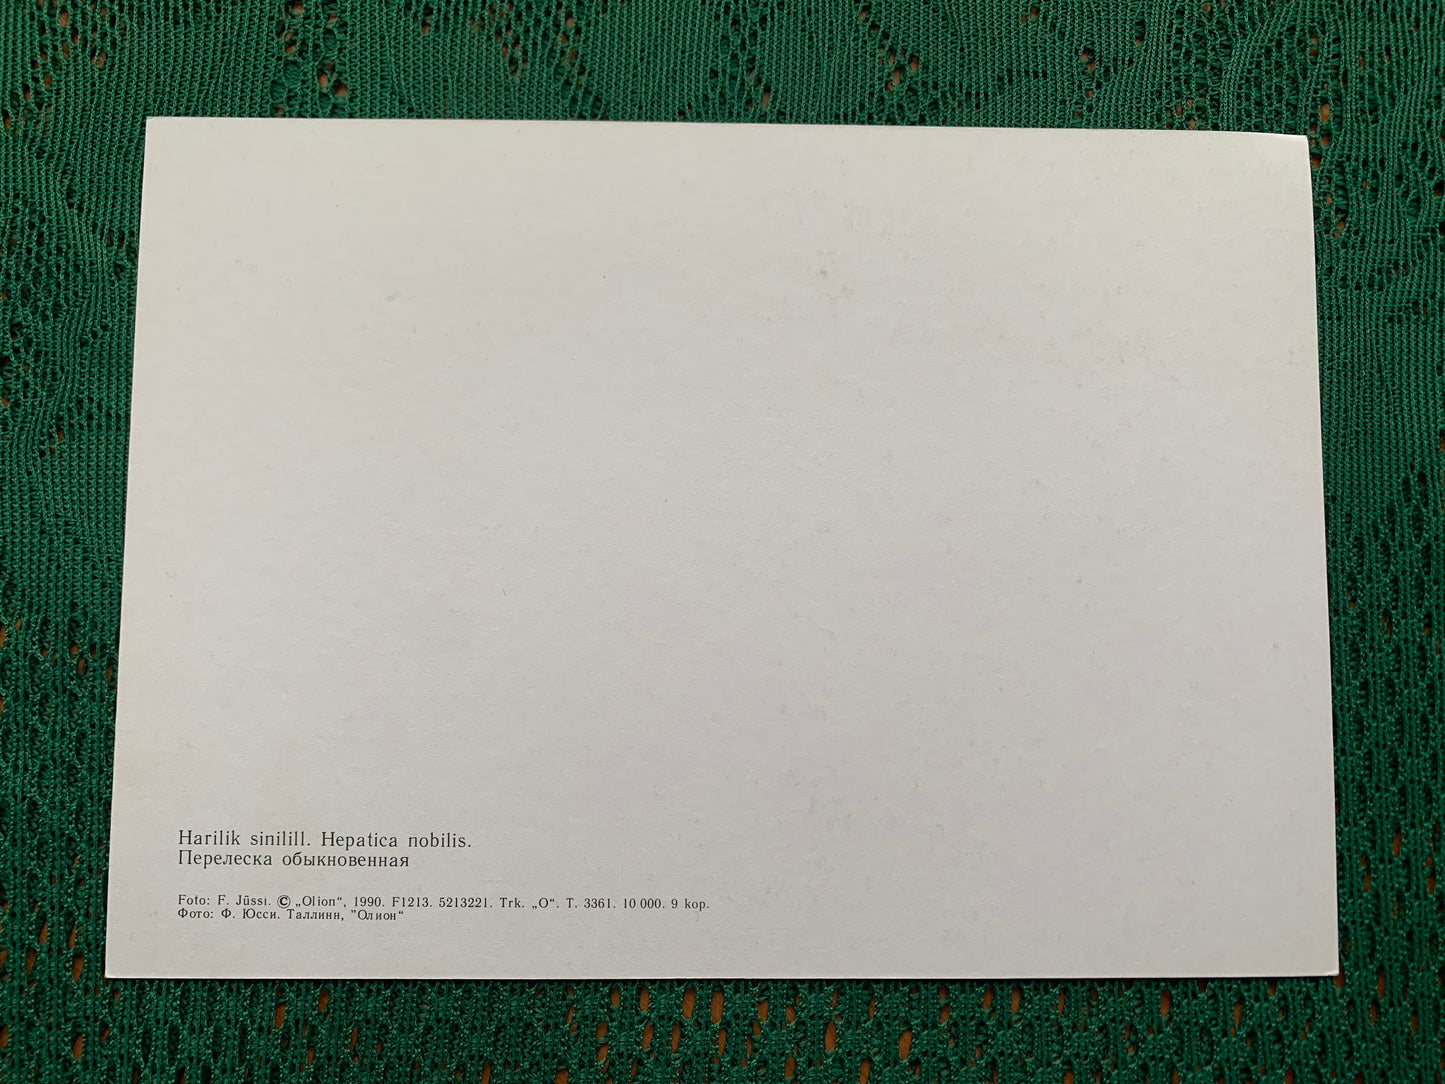 Estonian postcard - Flowers - Anemone hepatica - Hepatica nobilis - liverwort - liverleaf - kidneywort - pennywort - Printed in USSR - 1990 - unused